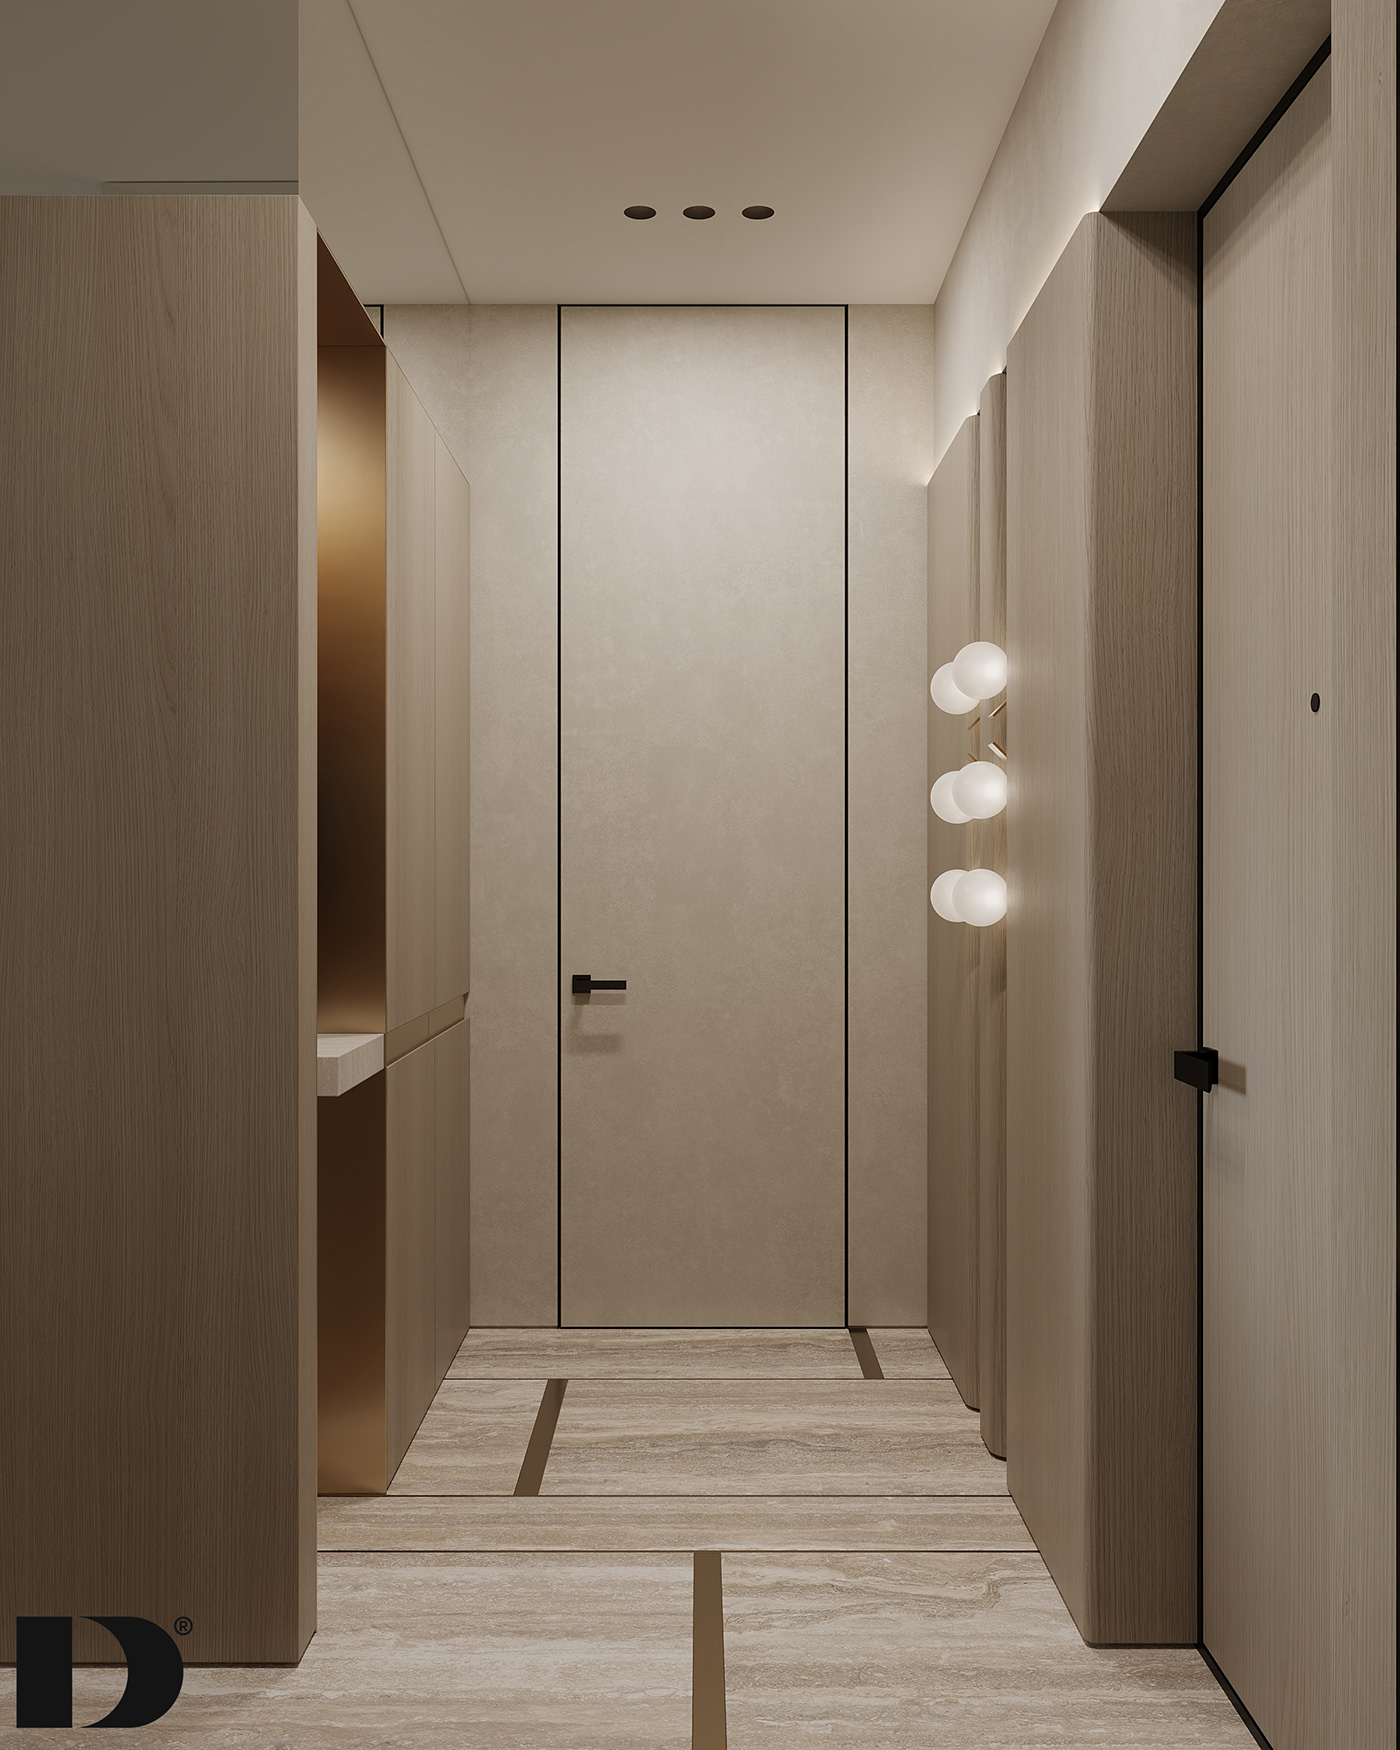 3dsmax Adobe Photoshop architecture CoronaRender  design designing Interior interiordesign Minimalism